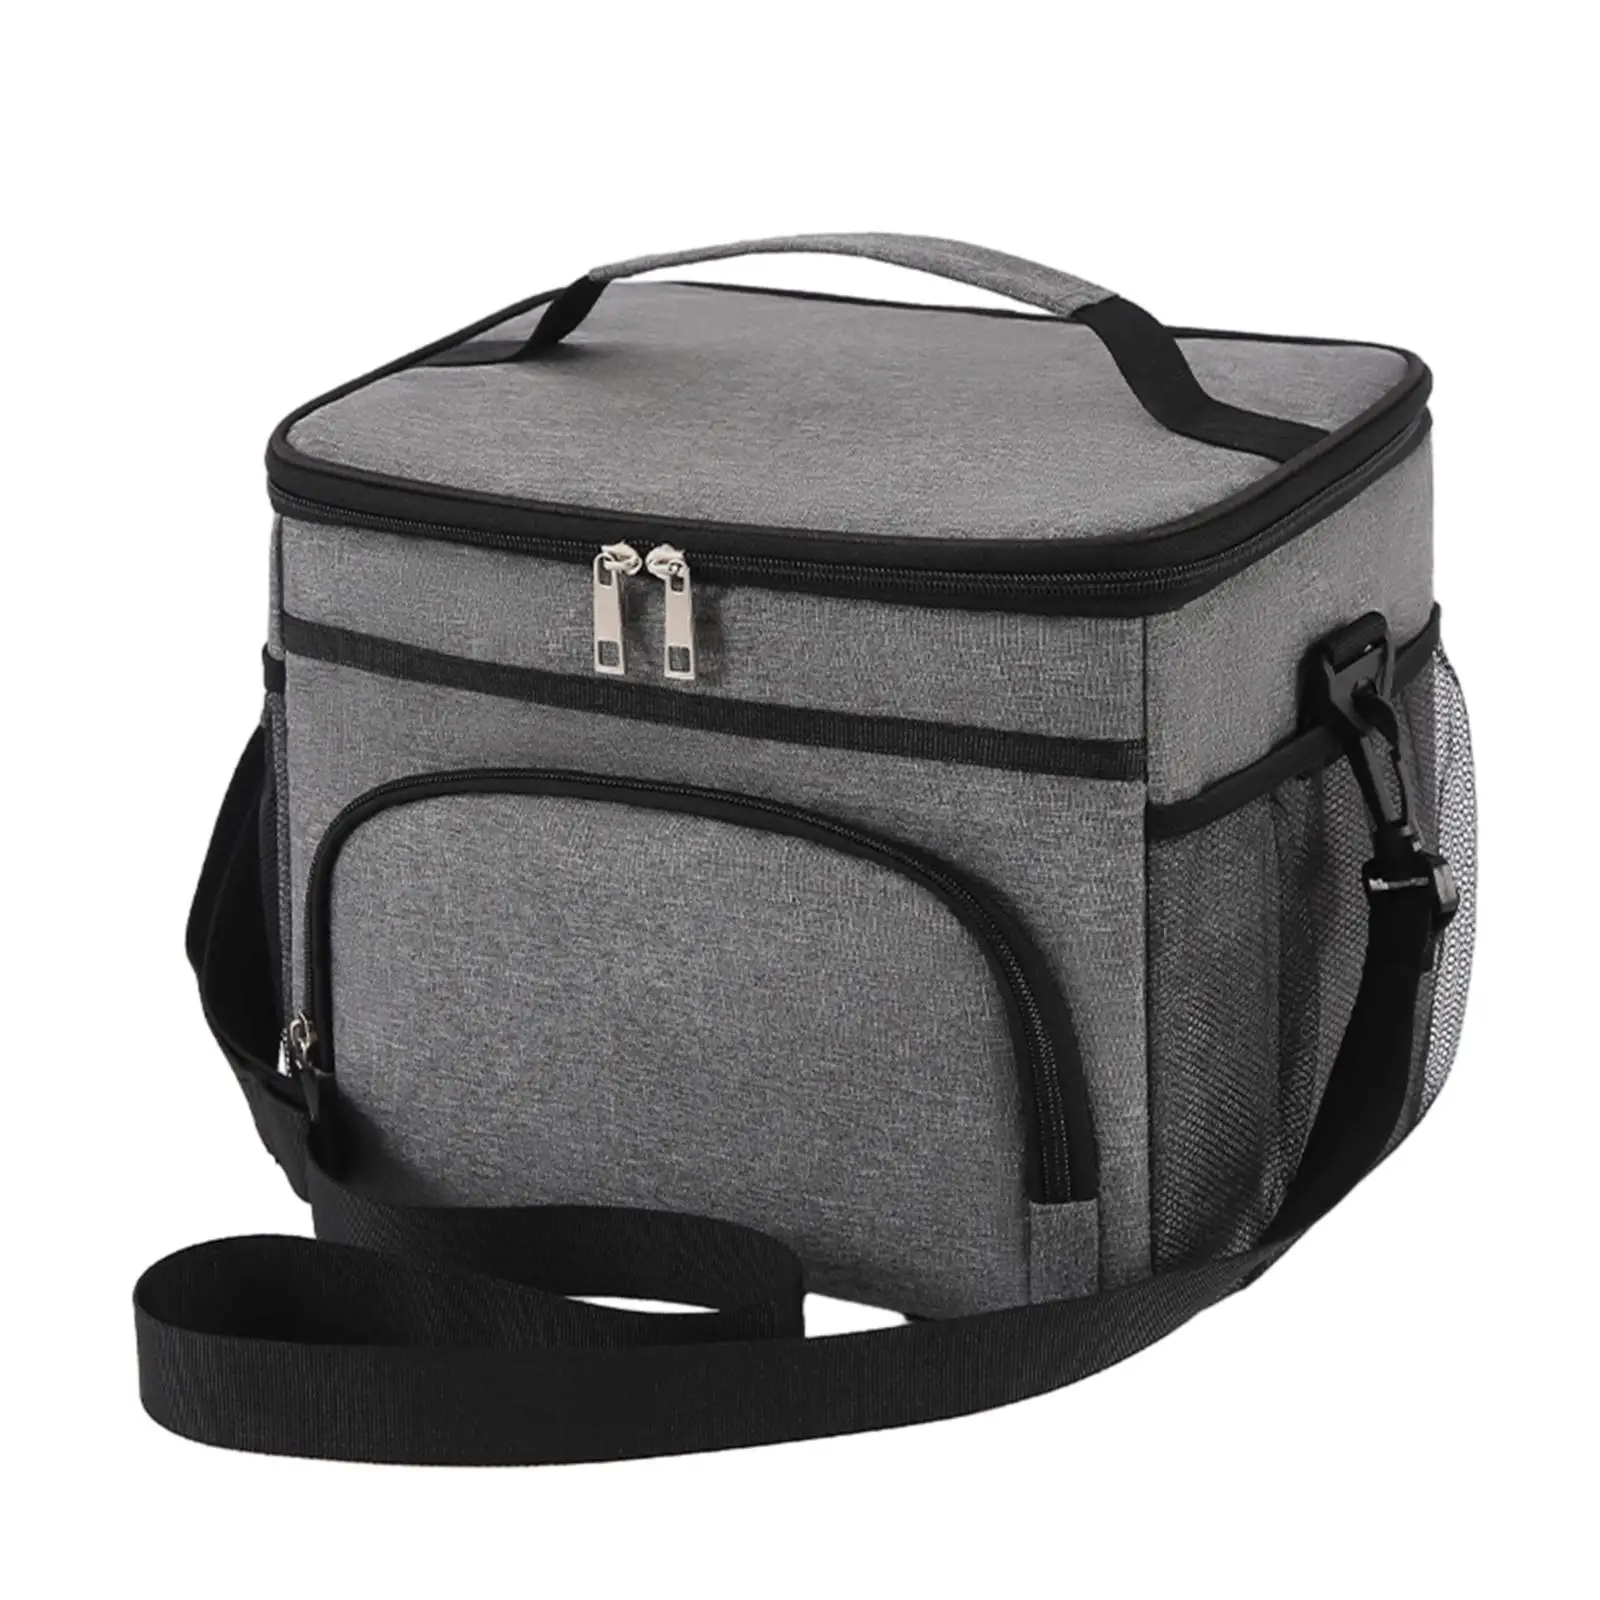 Portable Lunchbox with Adjustable Shoulder Strap Front Pocket Tote Handbag for Work Adults Women Men Hiking Picnic